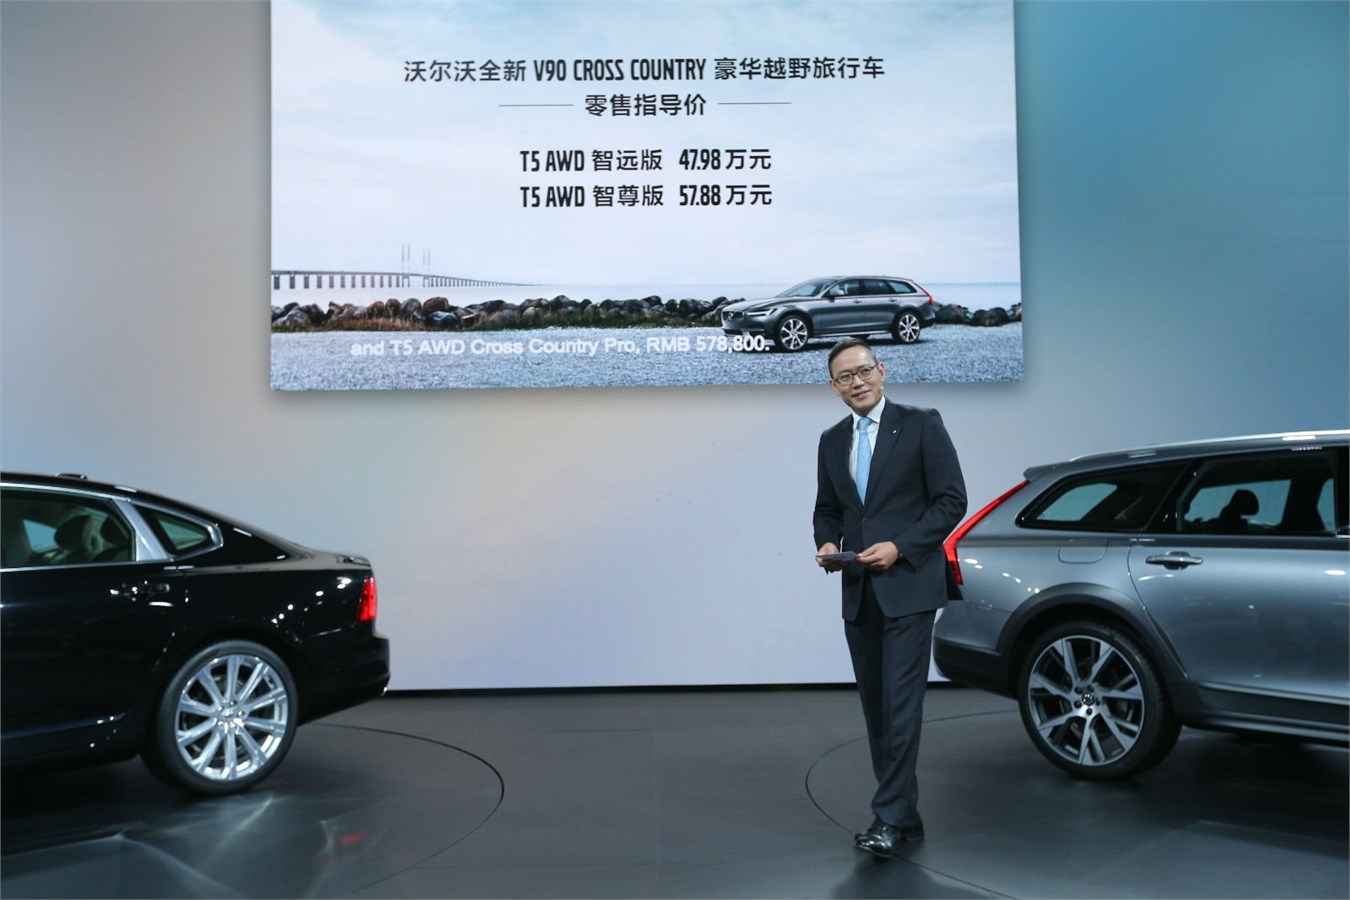 沃尔沃汽车集团全球高级副总裁、亚太区总裁兼CEO袁小林公布V90 Cross Country市场指导价